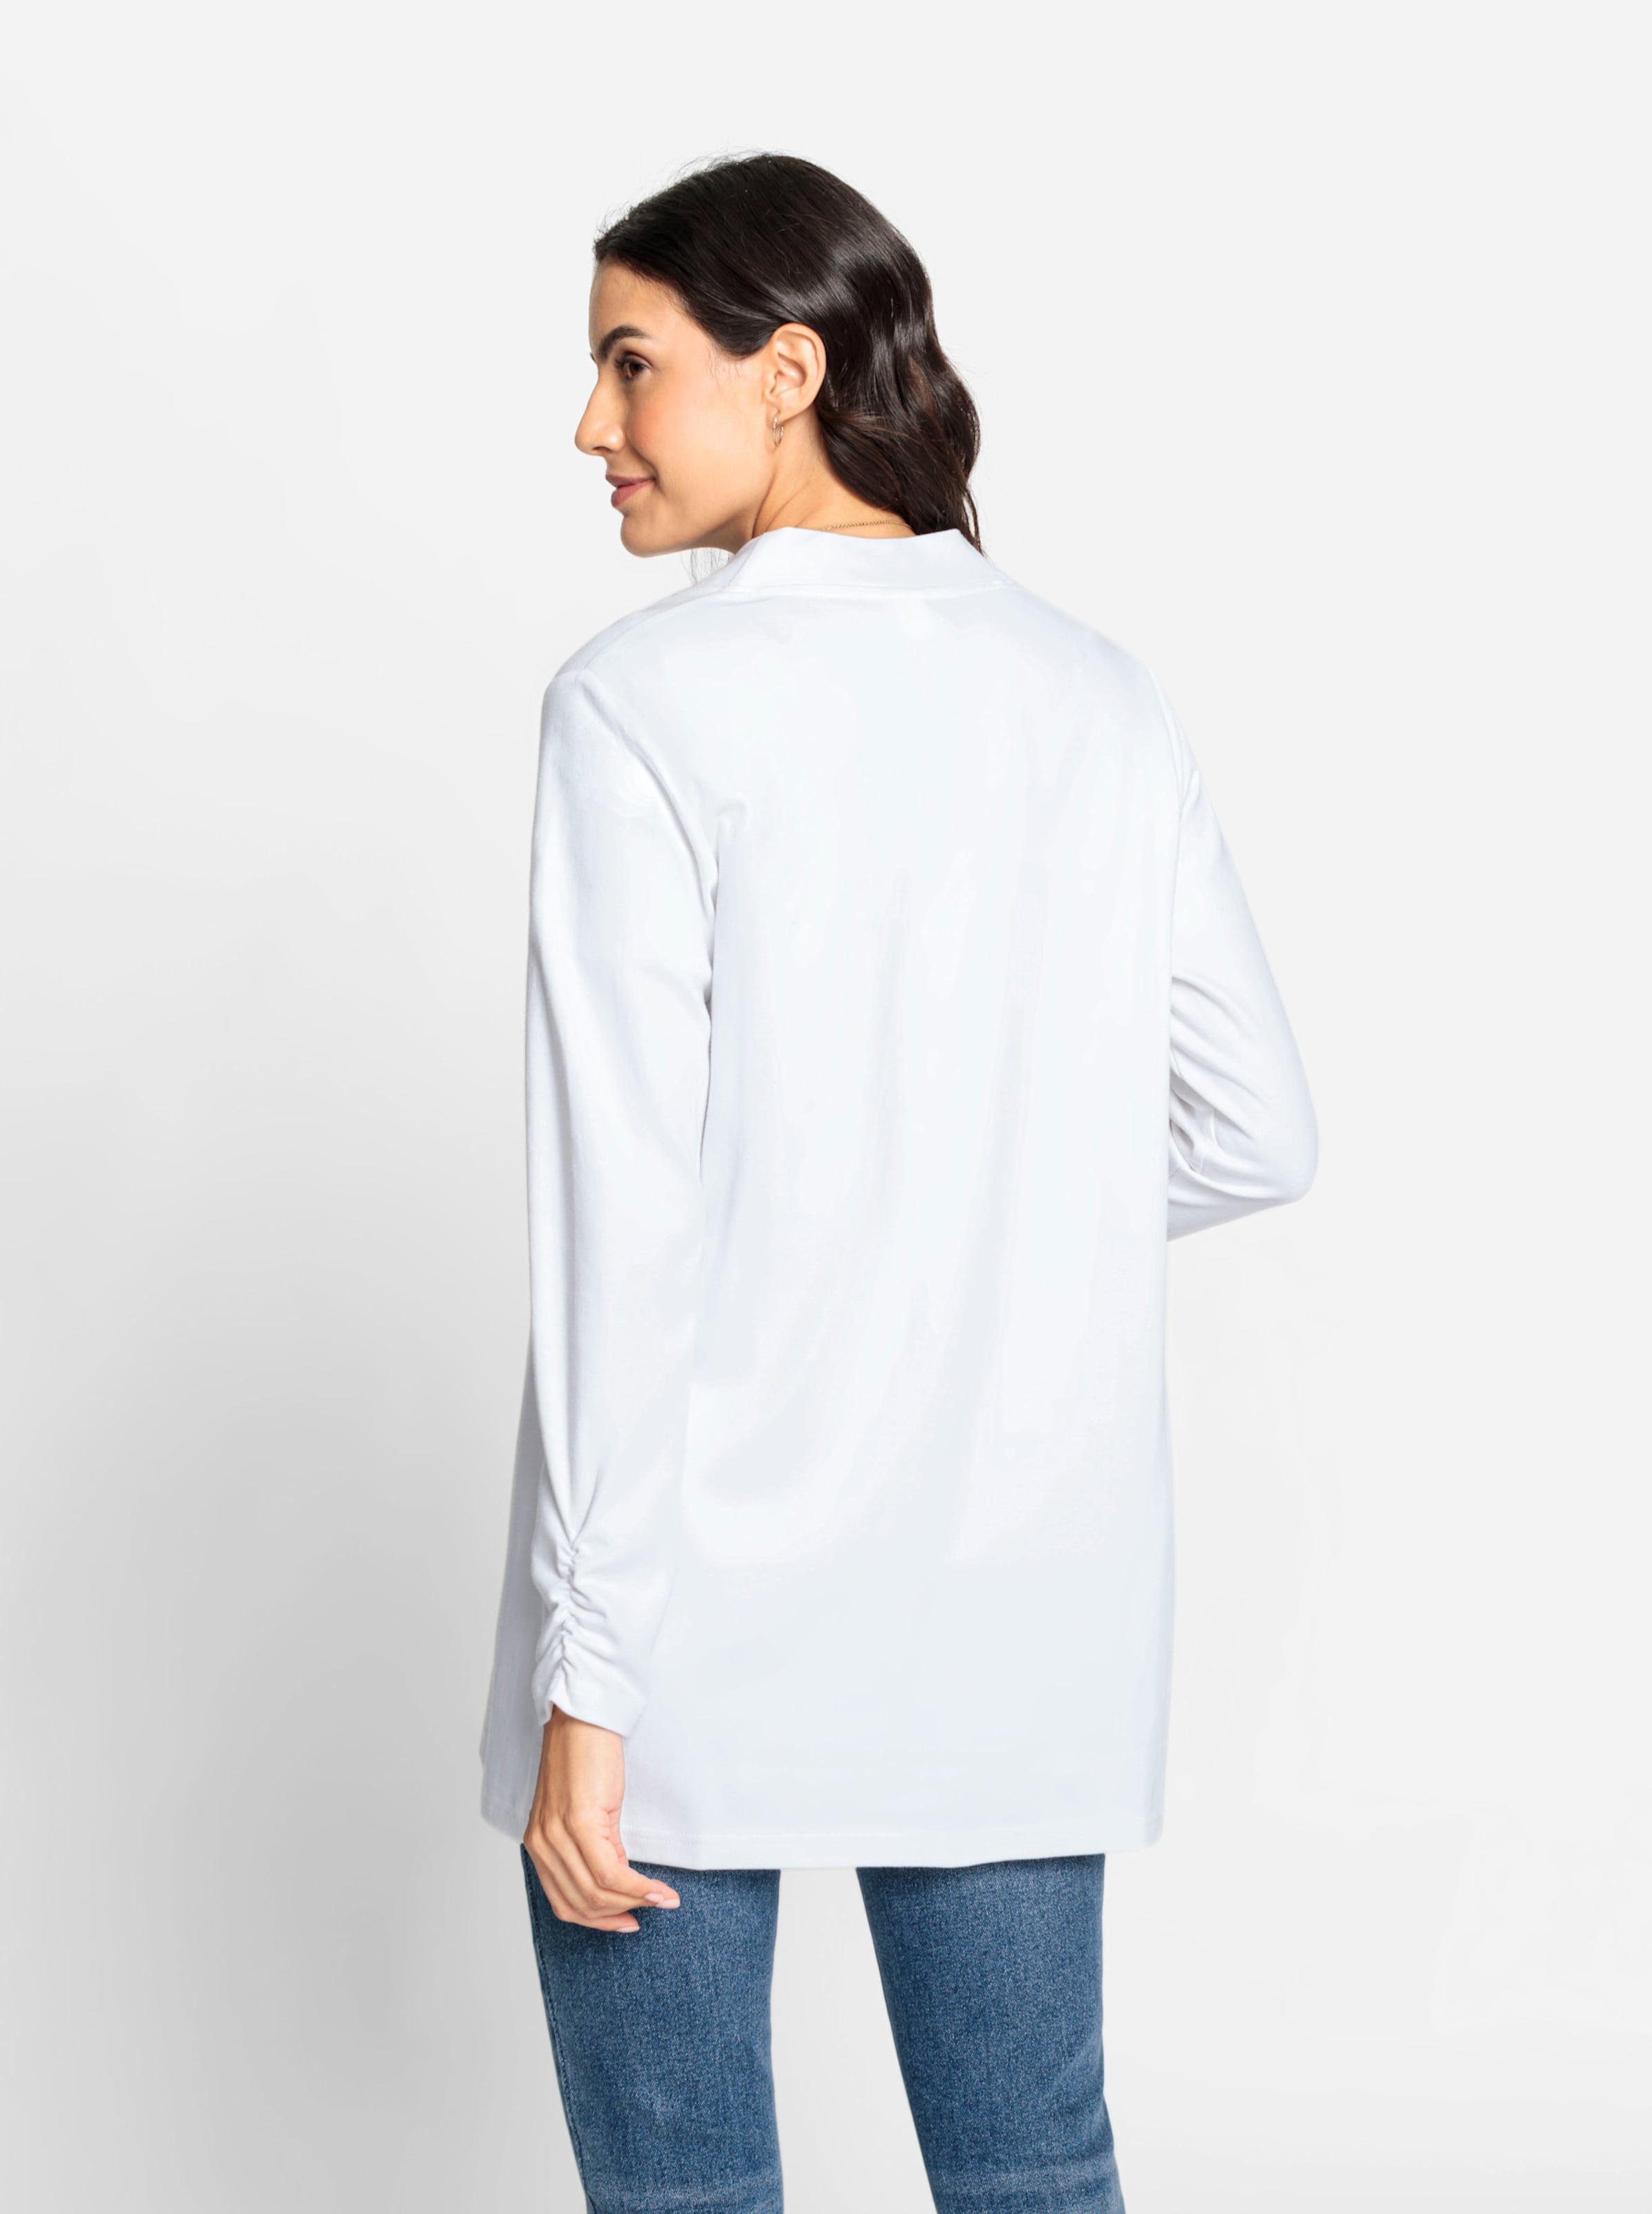 WAS IST günstig Kaufen-Shirtjacke in weiß von heine. Shirtjacke in weiß von heine <![CDATA[Wenn Sie nach einem Multitalent für Ihre Garderobe suchen, dann ist die Shirtjacke genau die Richtige! In offener, etwas längerer Form mit Raffung am Abschluss der langen Ärm